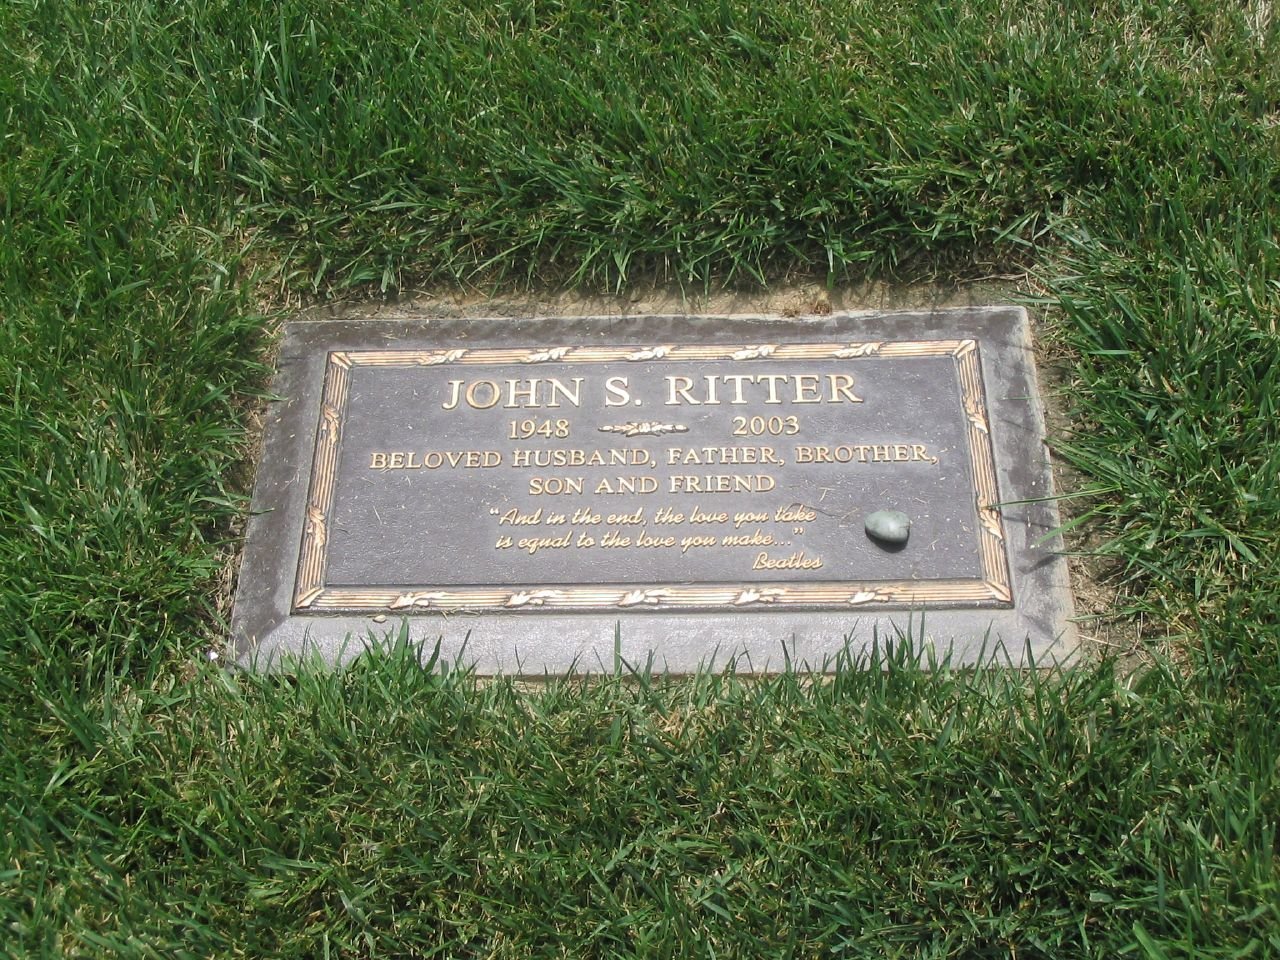 John Ritter's gravestone | Source: Wikimedia Commons